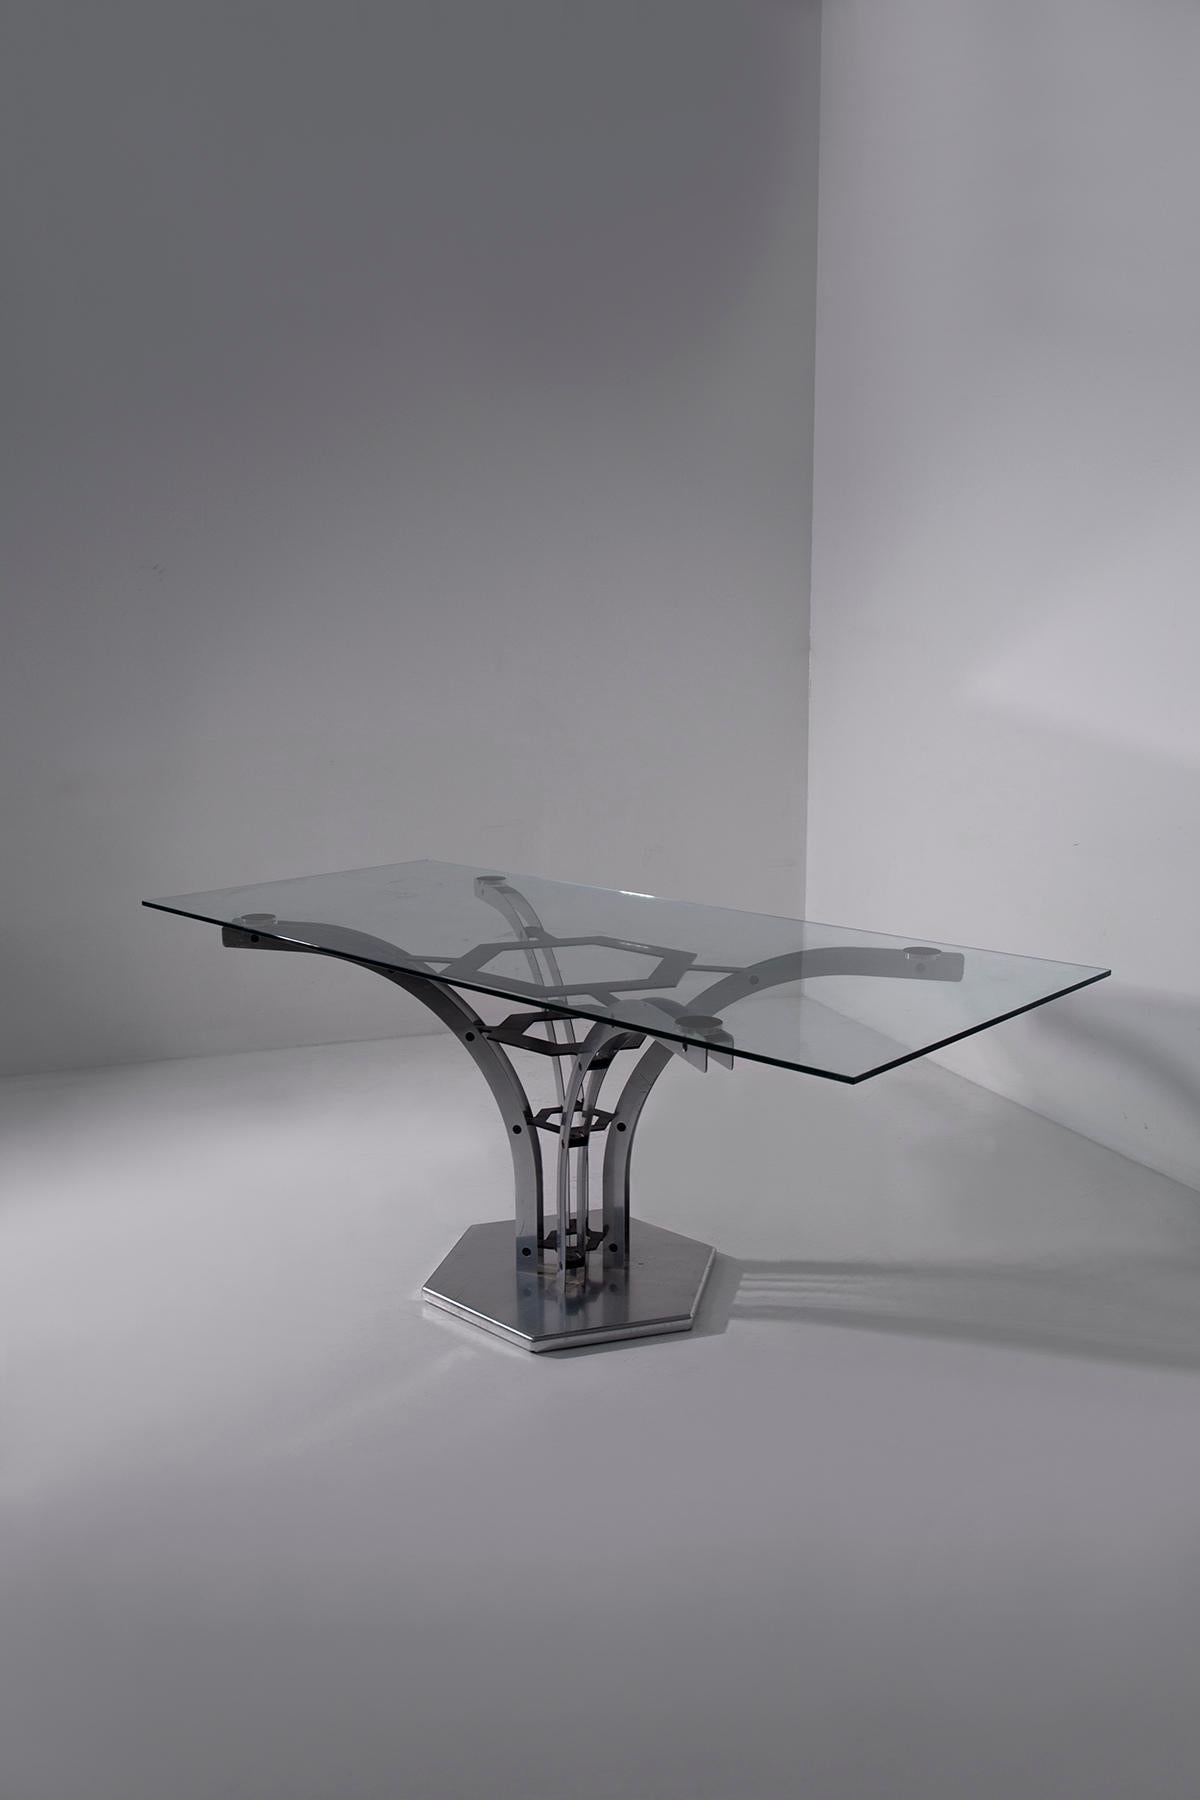 Entrez dans le monde captivant du design italien avec cette table géométrique frappante des années 1970 au début des années 1980. Son piédestal élaboré présente une précision technique qui force l'admiration, vous invitant à explorer ses détails